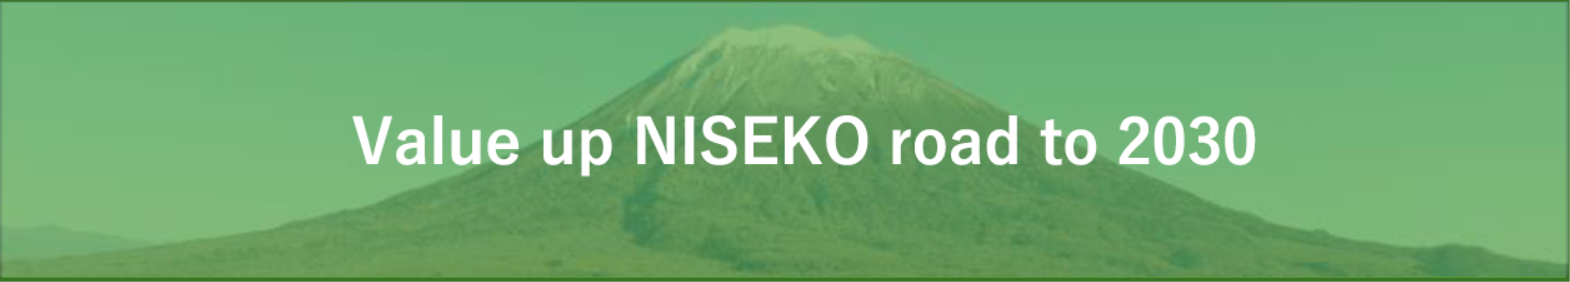 Value up NISEKO road to 2030